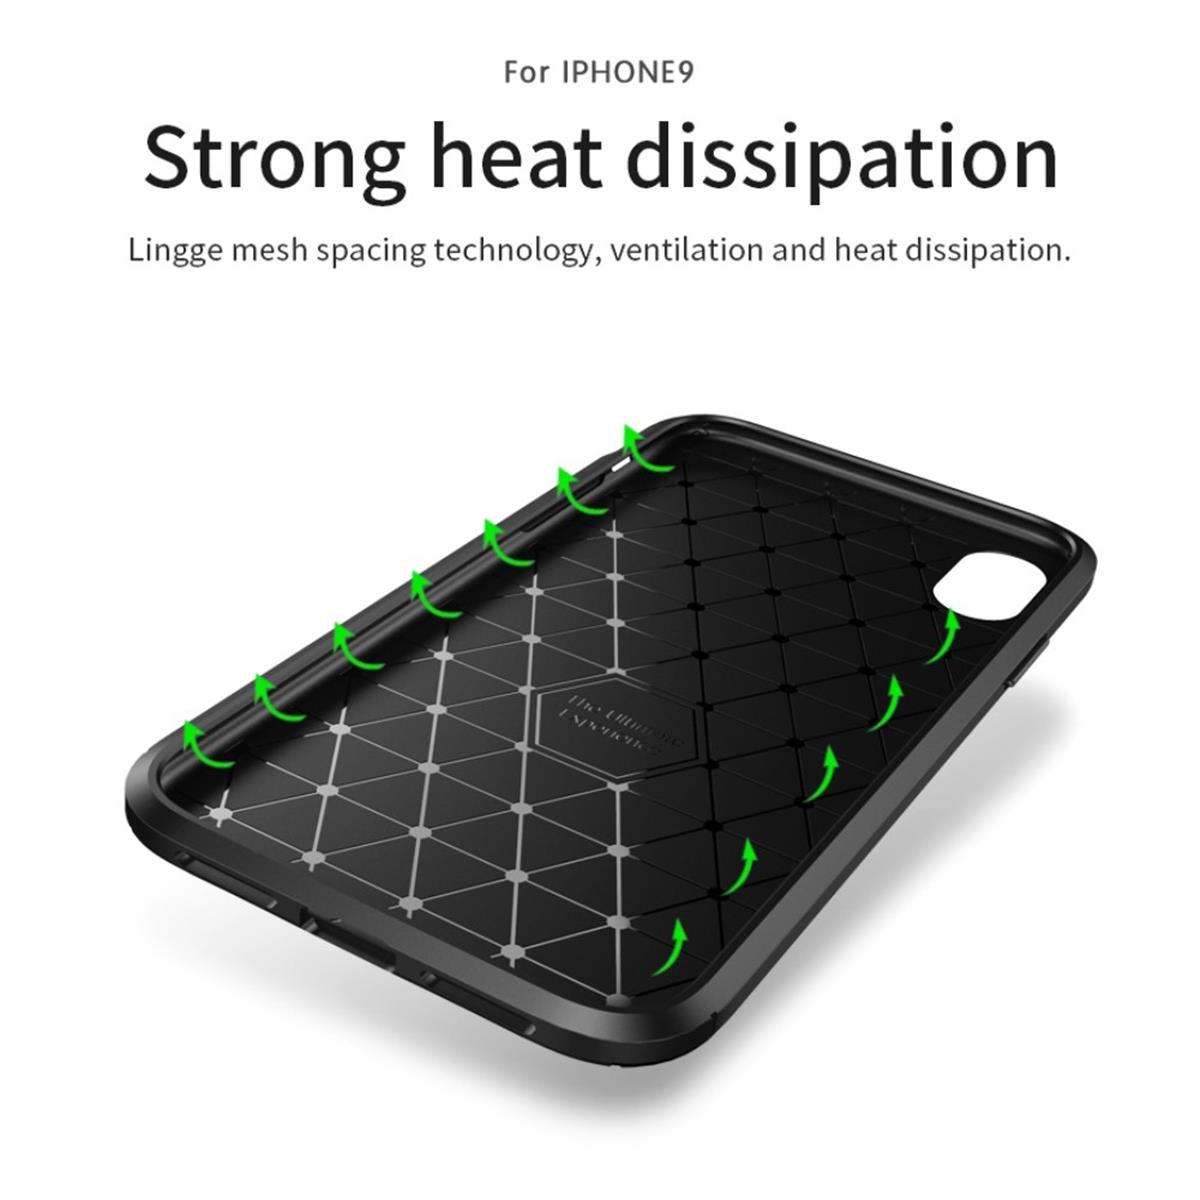 Hülle für Apple iPhone Xs Max Handyhülle Cover Silikon Case Bumper Carbonfarben